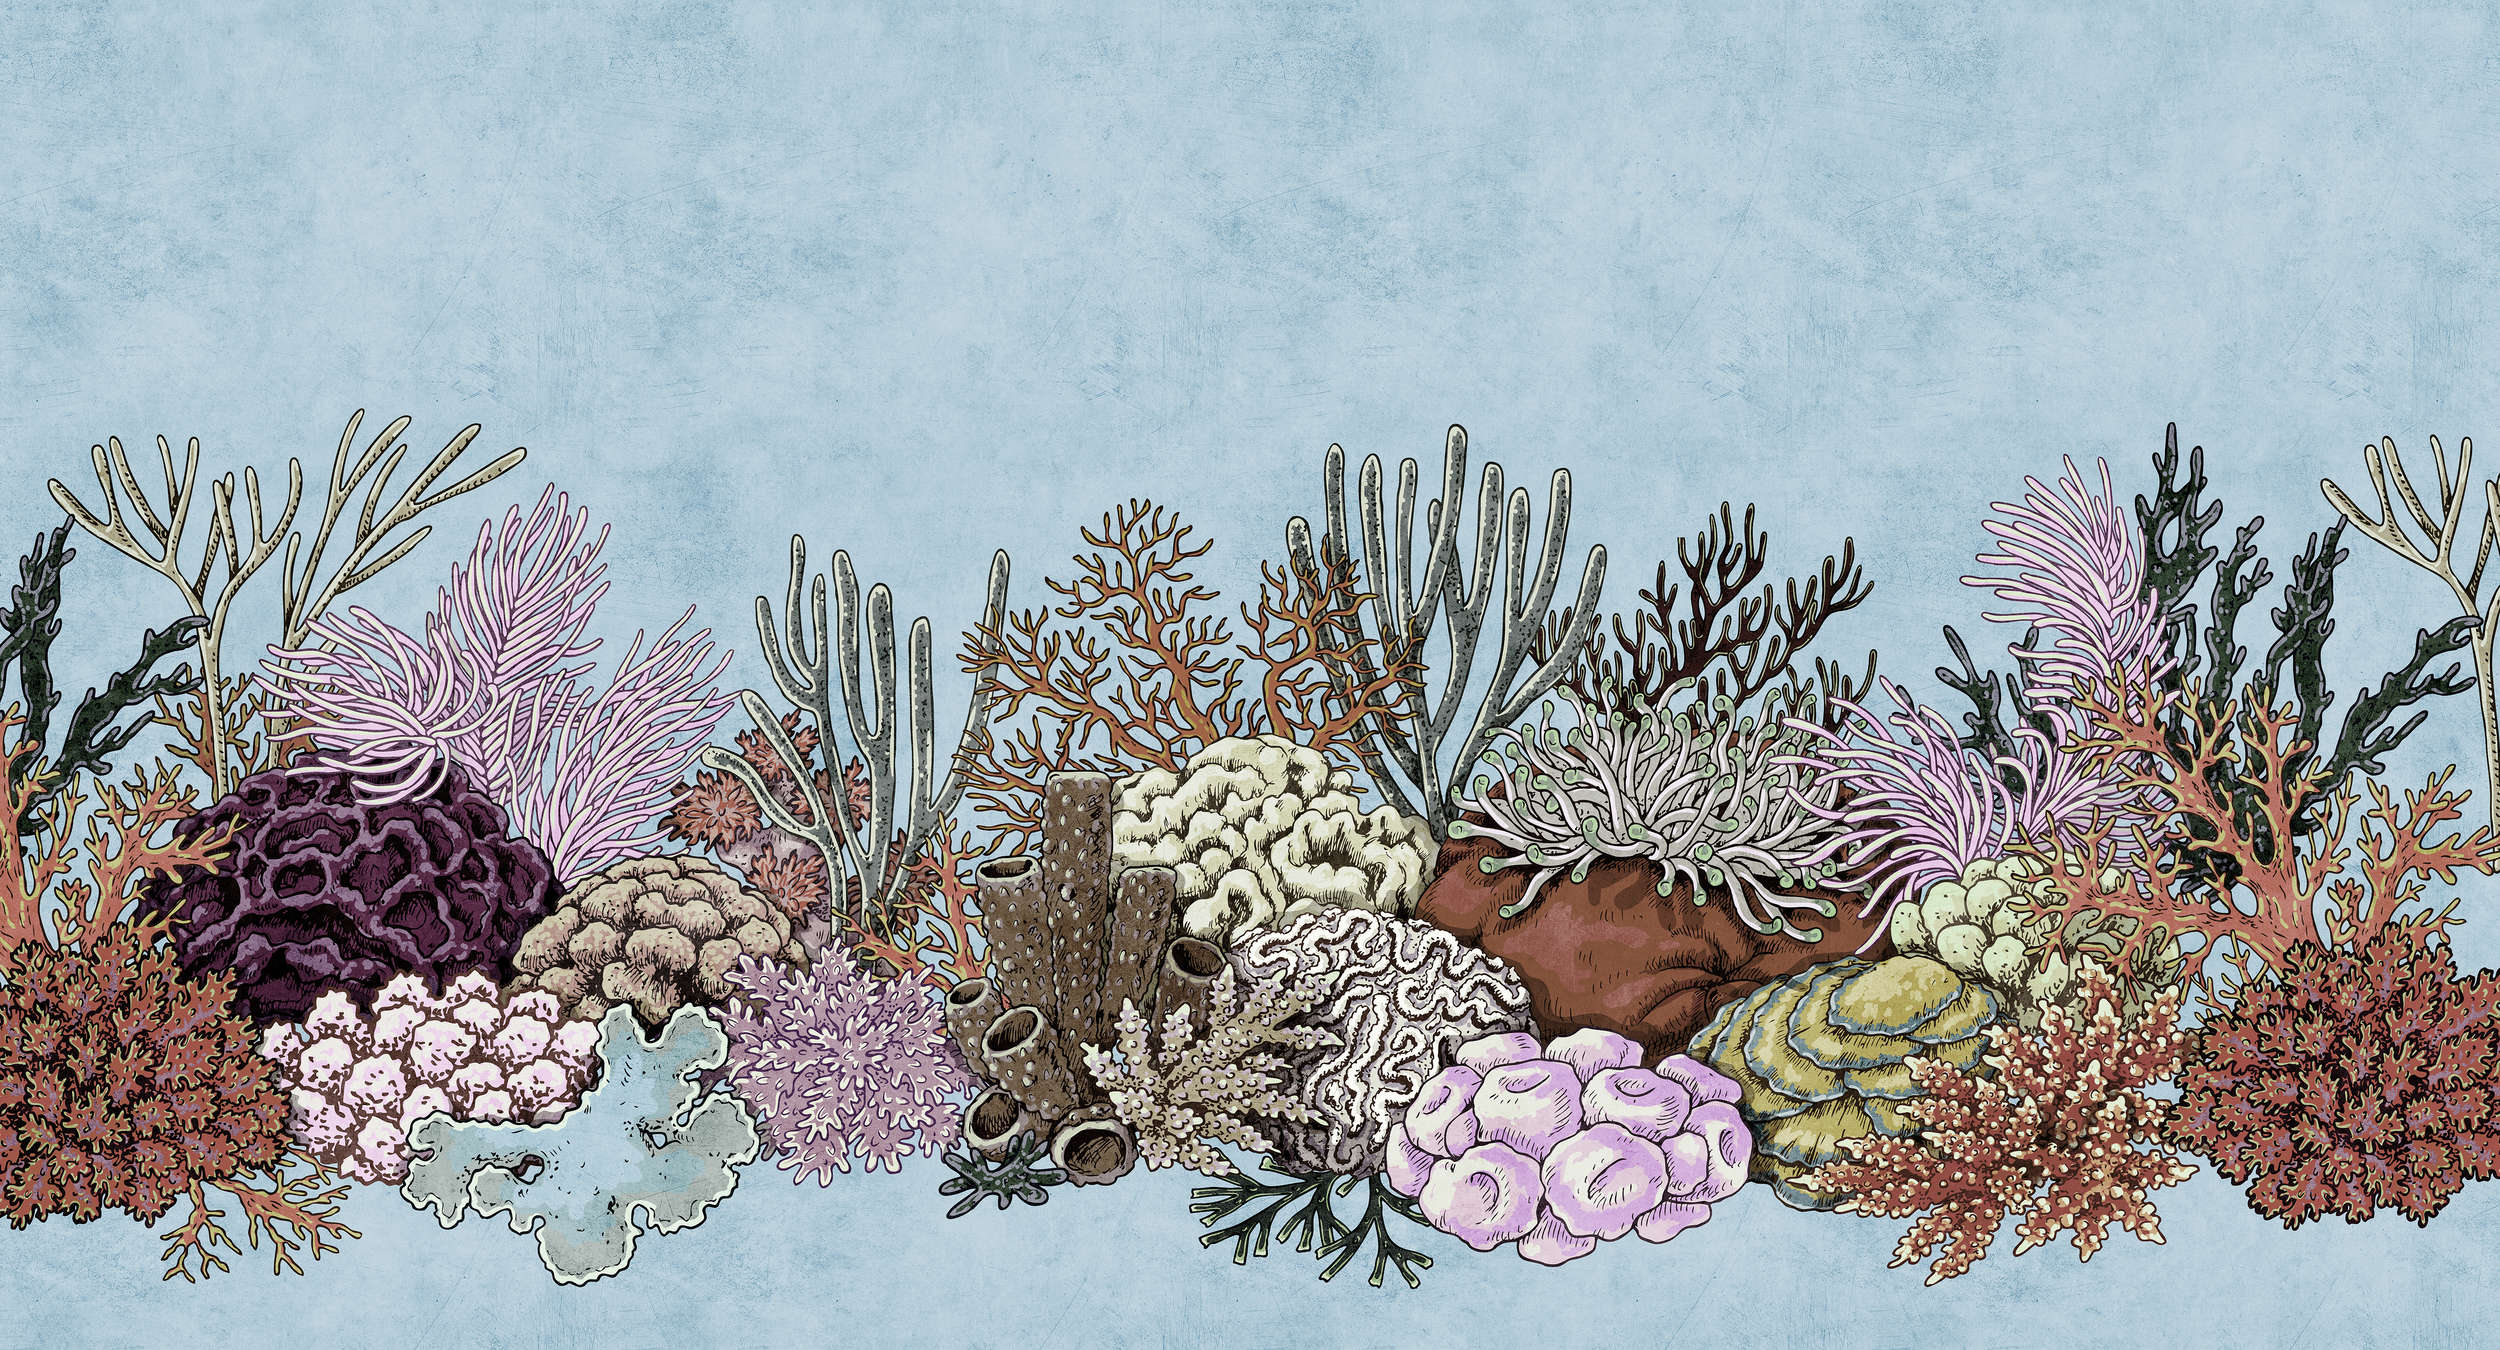             Octopus's Garden 1 - Papier peint panoramique sous-marin avec des coraux dans une structure de papier buvard - bleu, rose | Premium intissé lisse
        